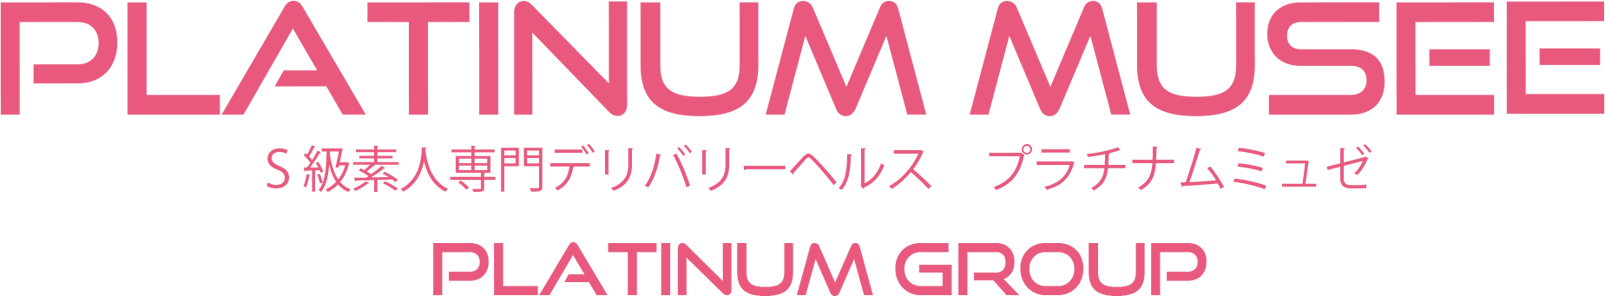 福岡デリヘル S級素人専門 プラチナム ミュゼ(Platinum musee)